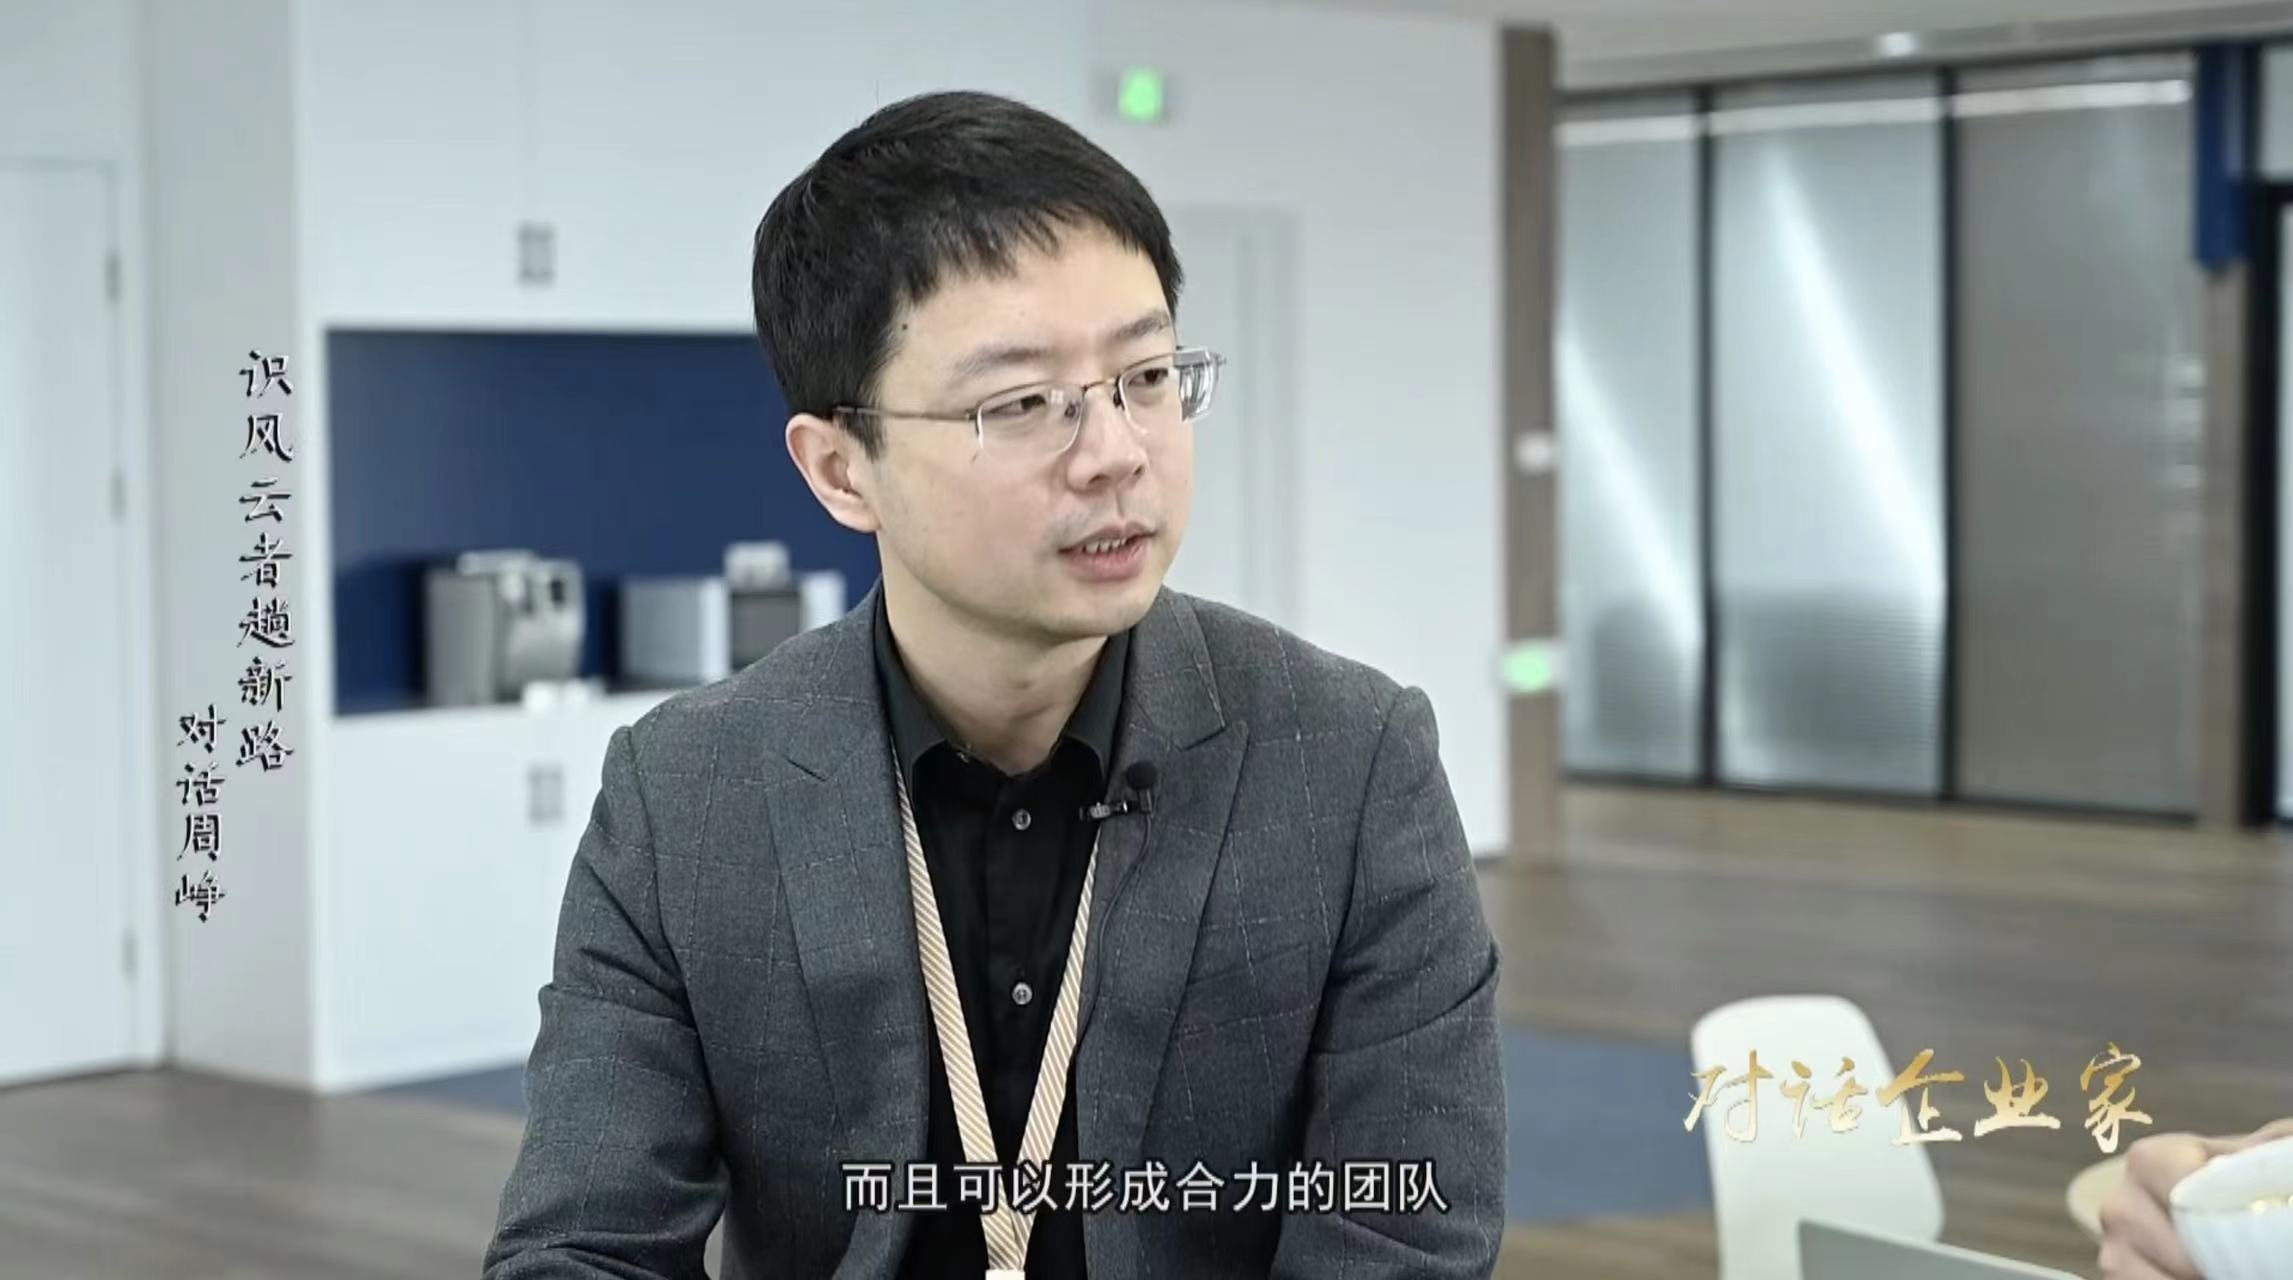 Zhou Zheng is interviewed by Dialogue Entrepreneurs